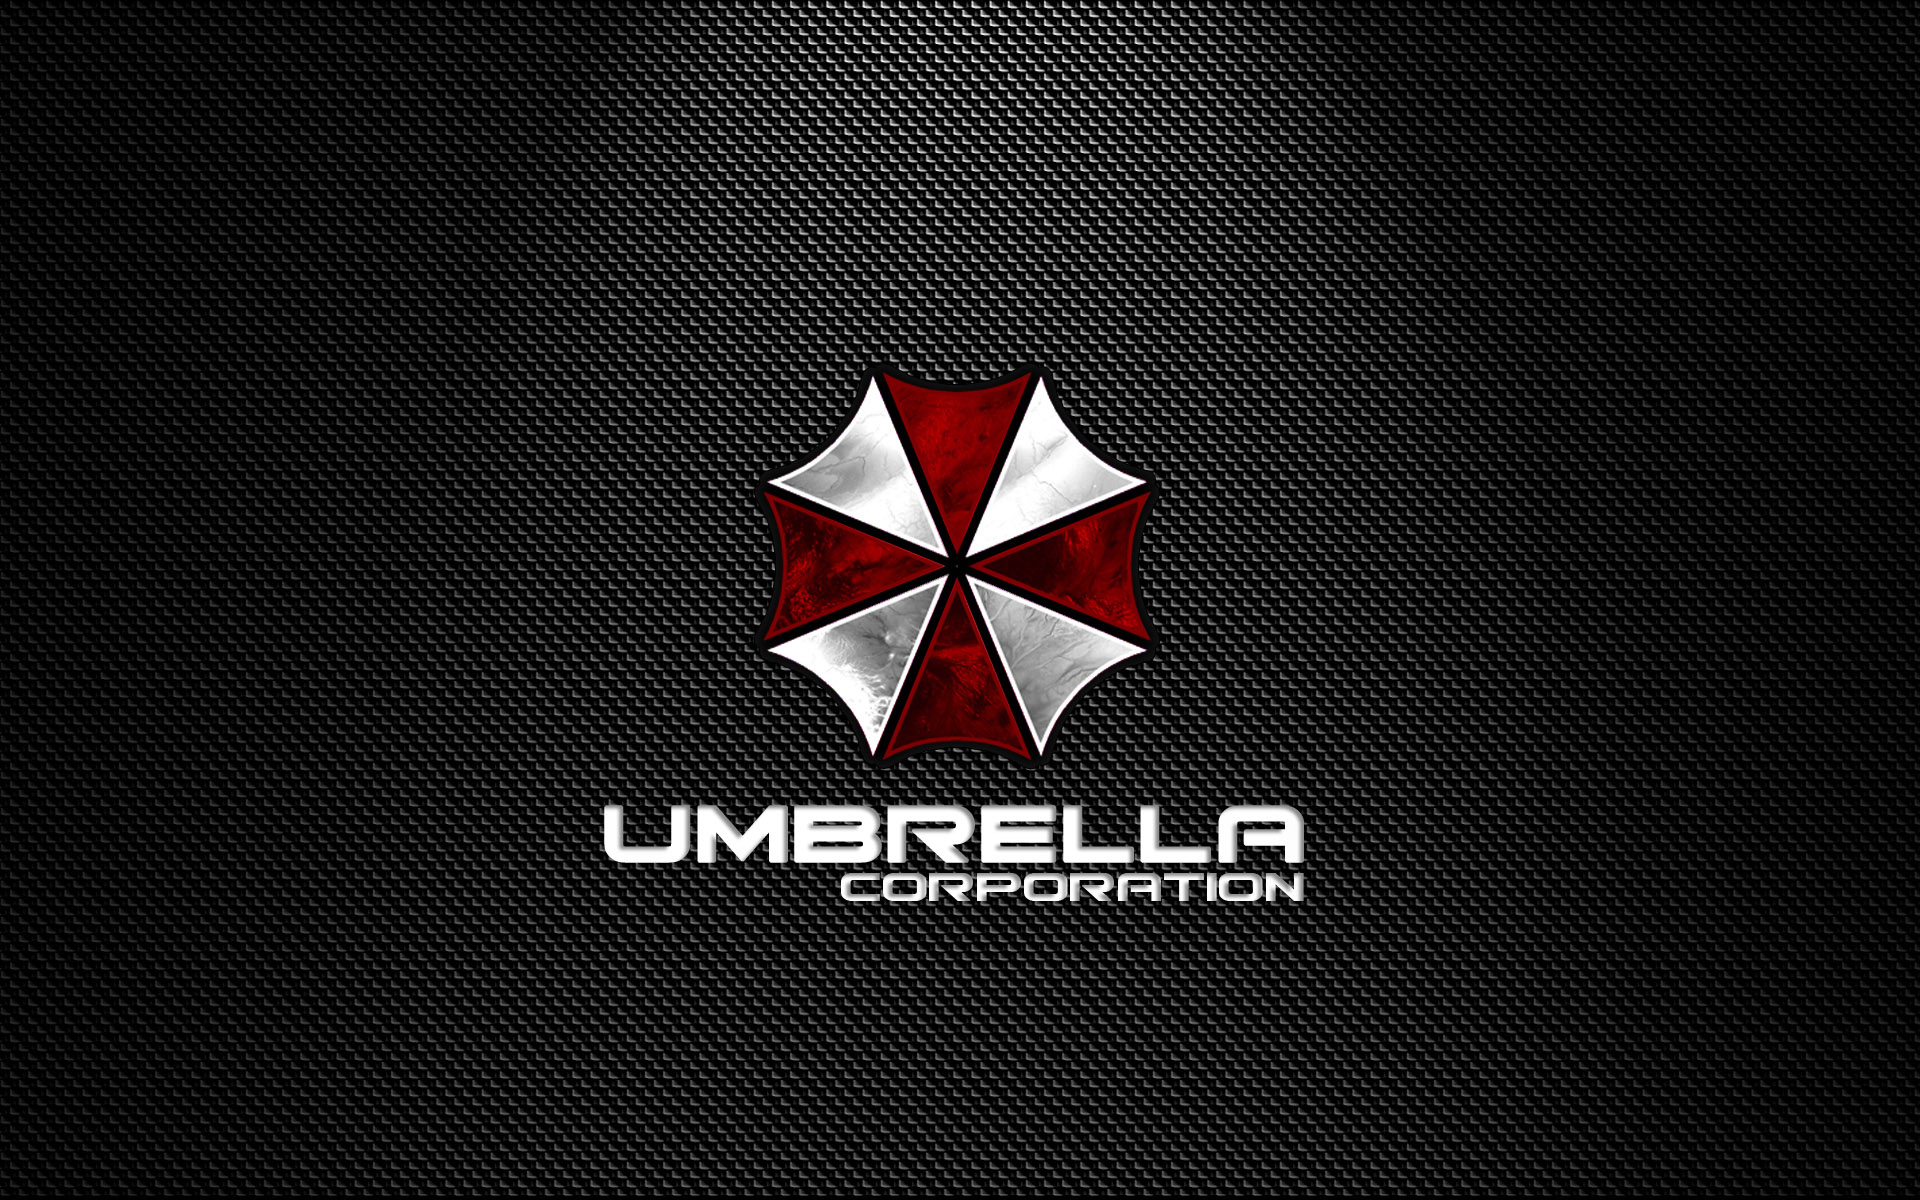 Umbrella Corporation Logo fond ecran hd